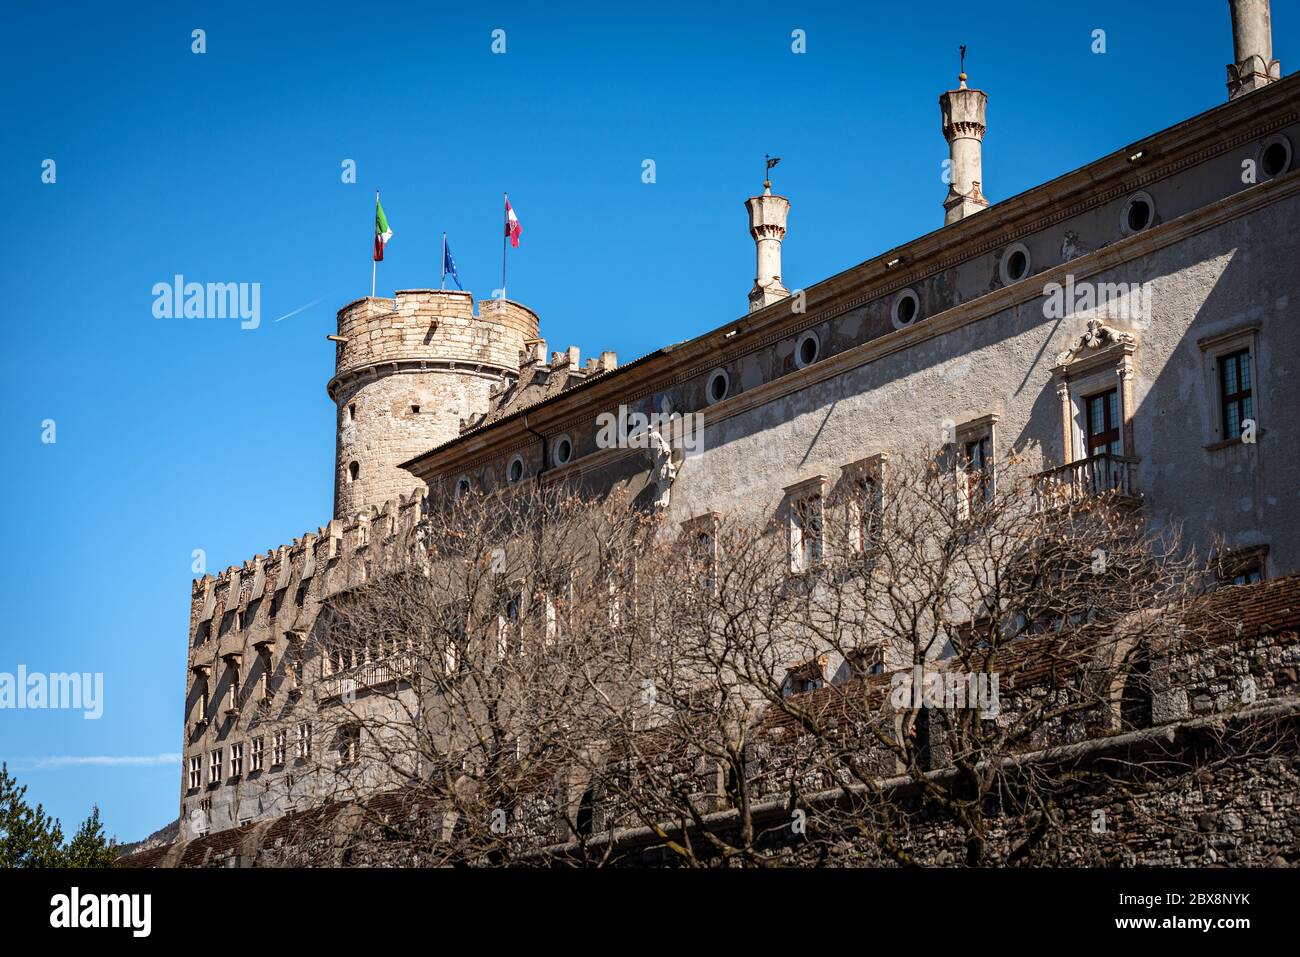 Mittelalterliche Burg der Stadt Trient, Castello del Buonconsiglio oder Castelvecchio, XIII-XVIII Jahrhundert, Trentino Südtirol, Italien, Europa Stockfoto